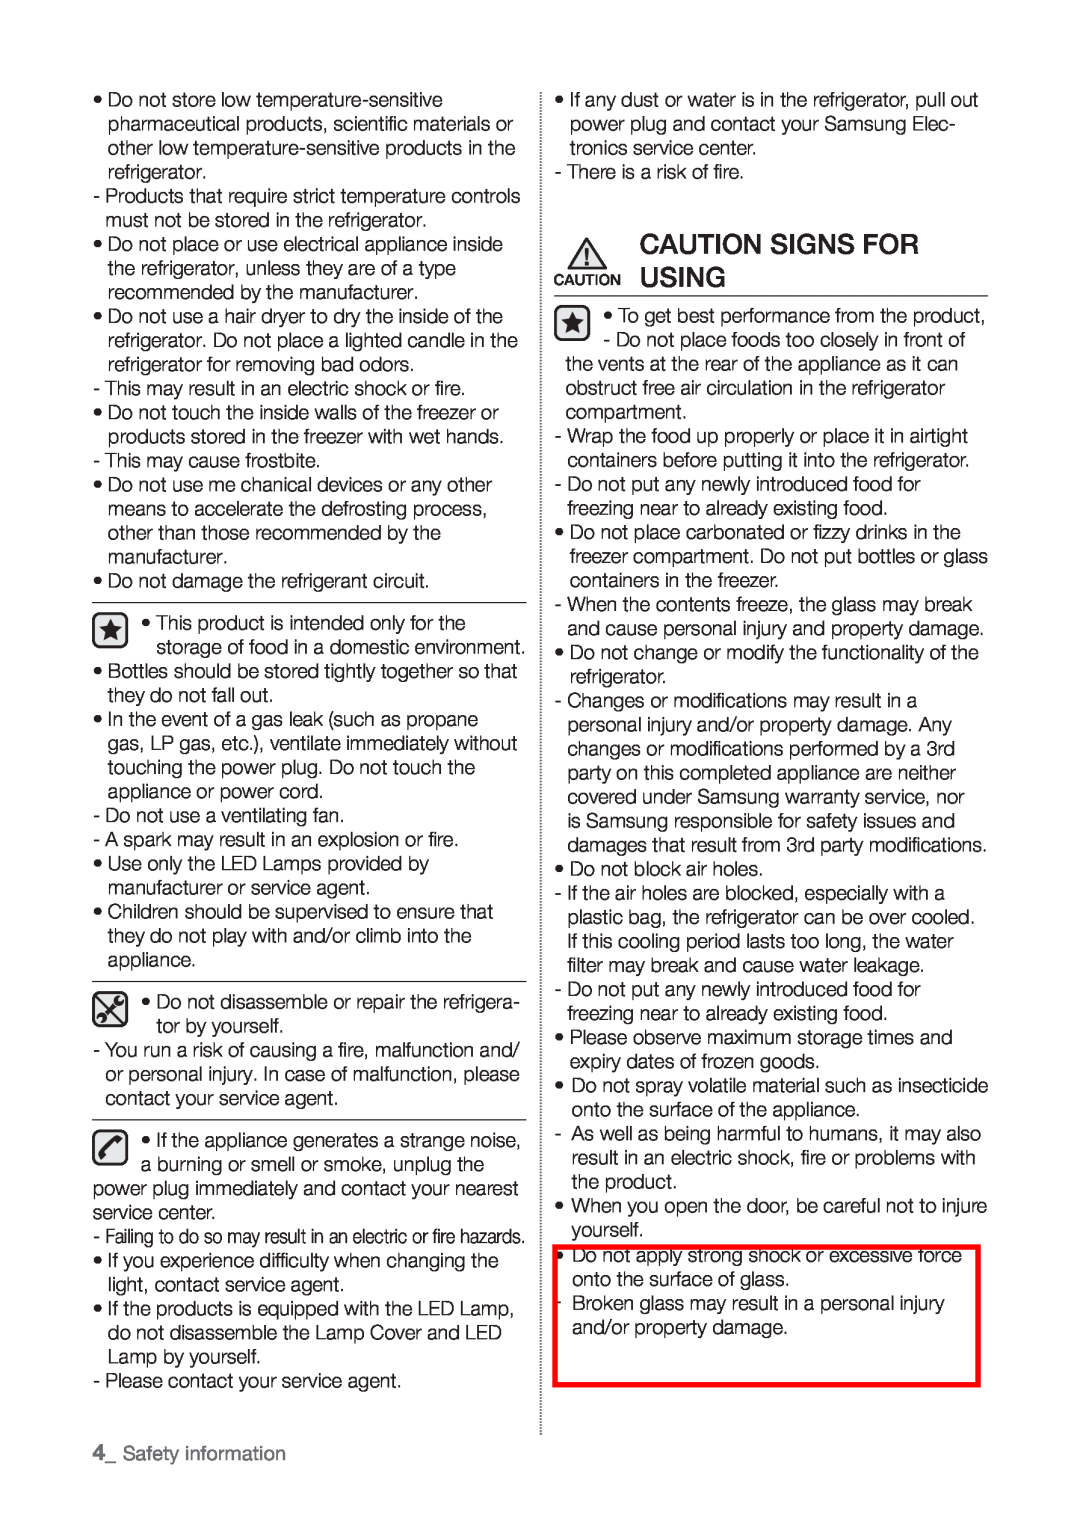 Samsung RT60KZRSL1/XSG, RT60KSRSW1/ZAM, RT55KZRSL1/XSG, RT60KZRSL1/ZAM manual Caution Signs For, Safety information 